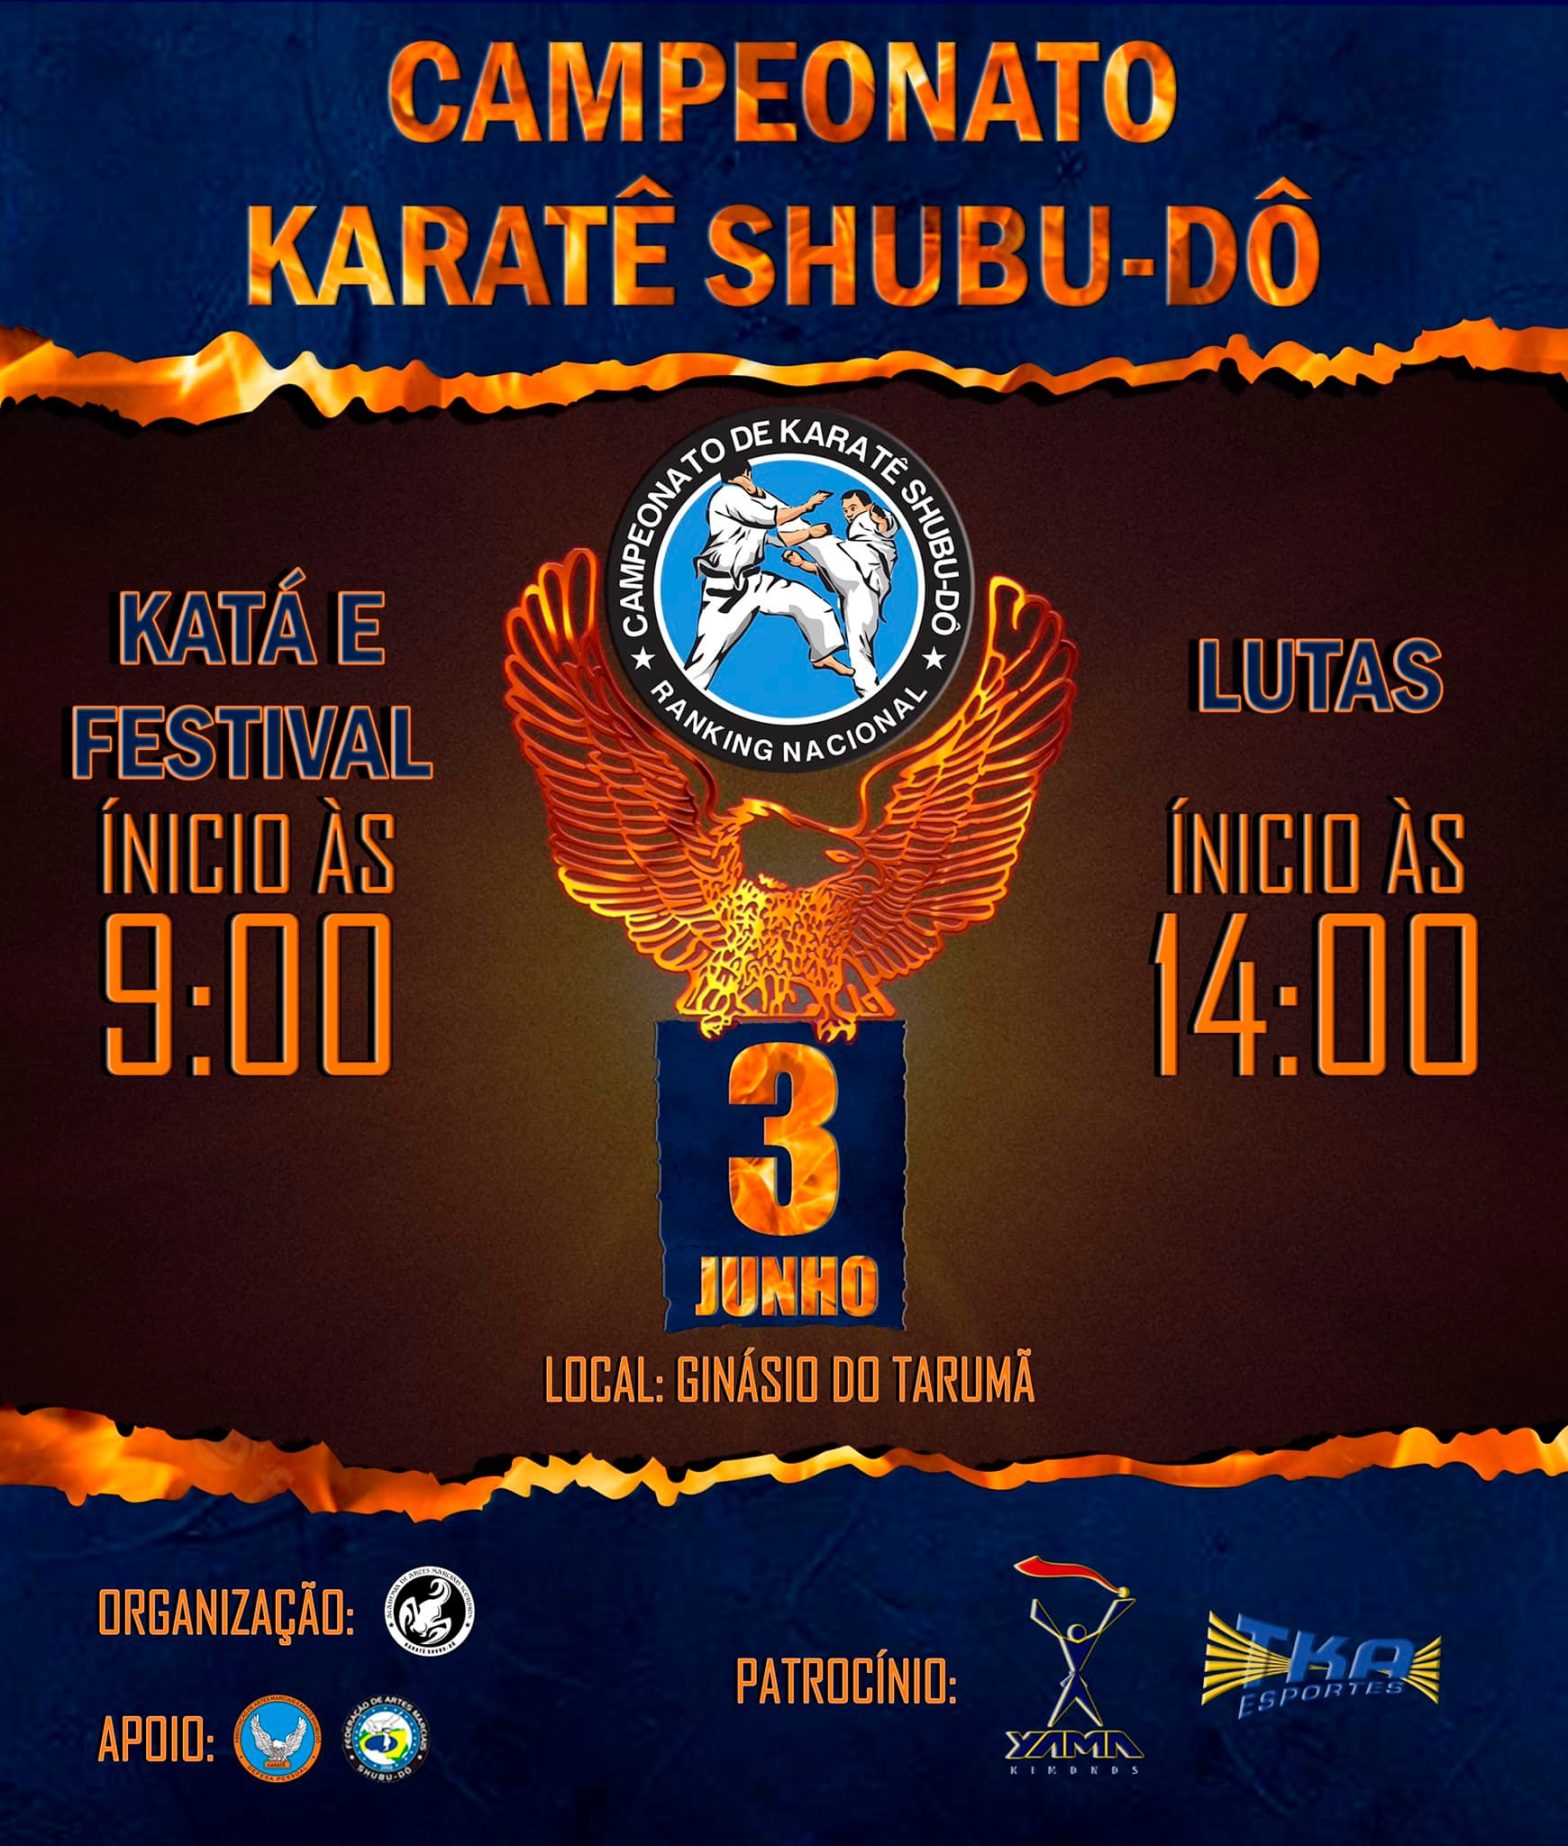 Campeonato Karatê Shubu-dô